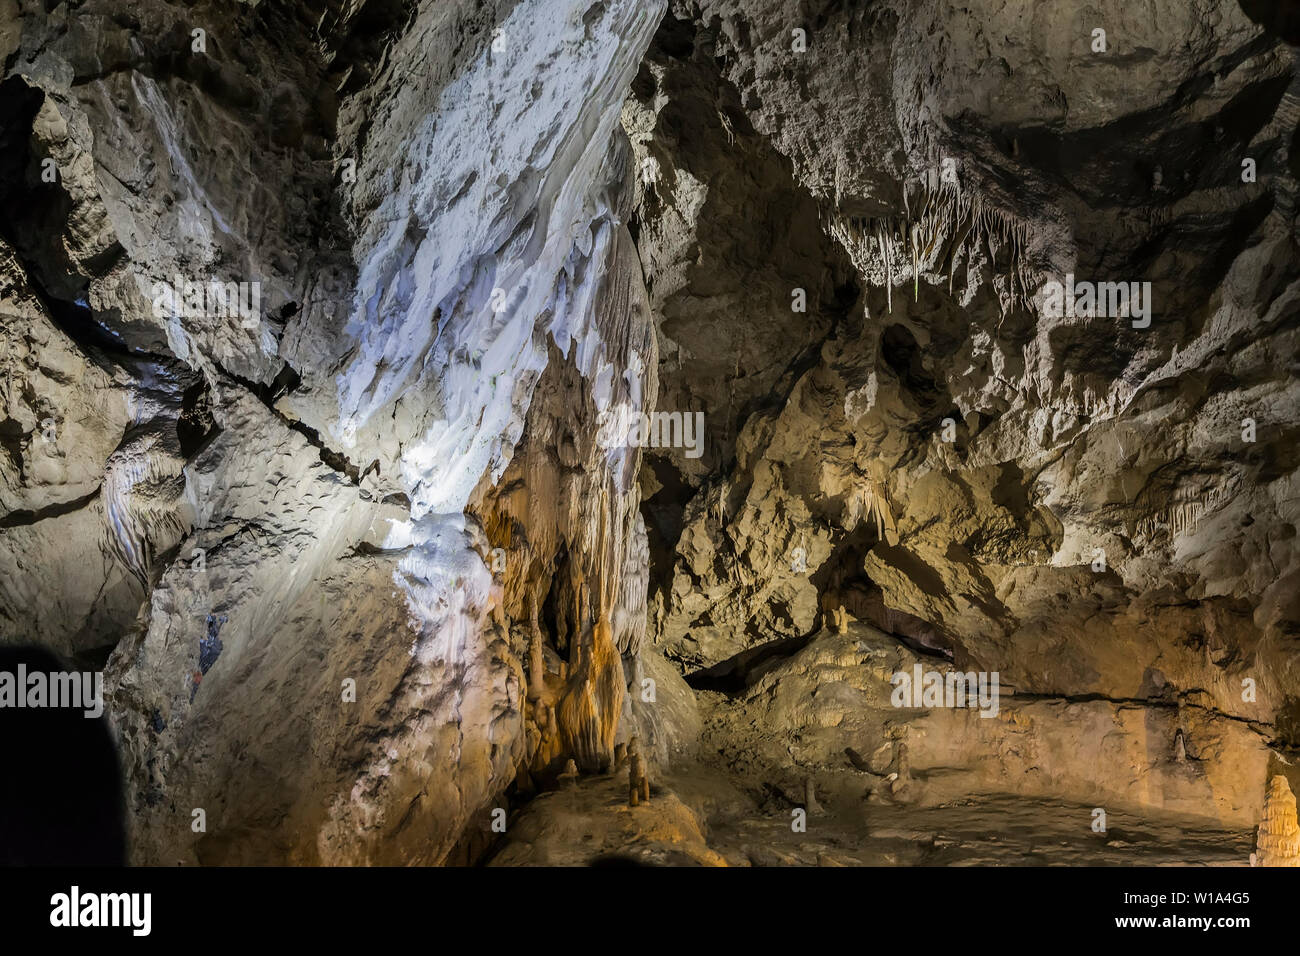 Grotte de Belianska Galerie - grotte de stalactites dans la partie orientale de l'Belianske Tatras en Slovaquie Banque D'Images